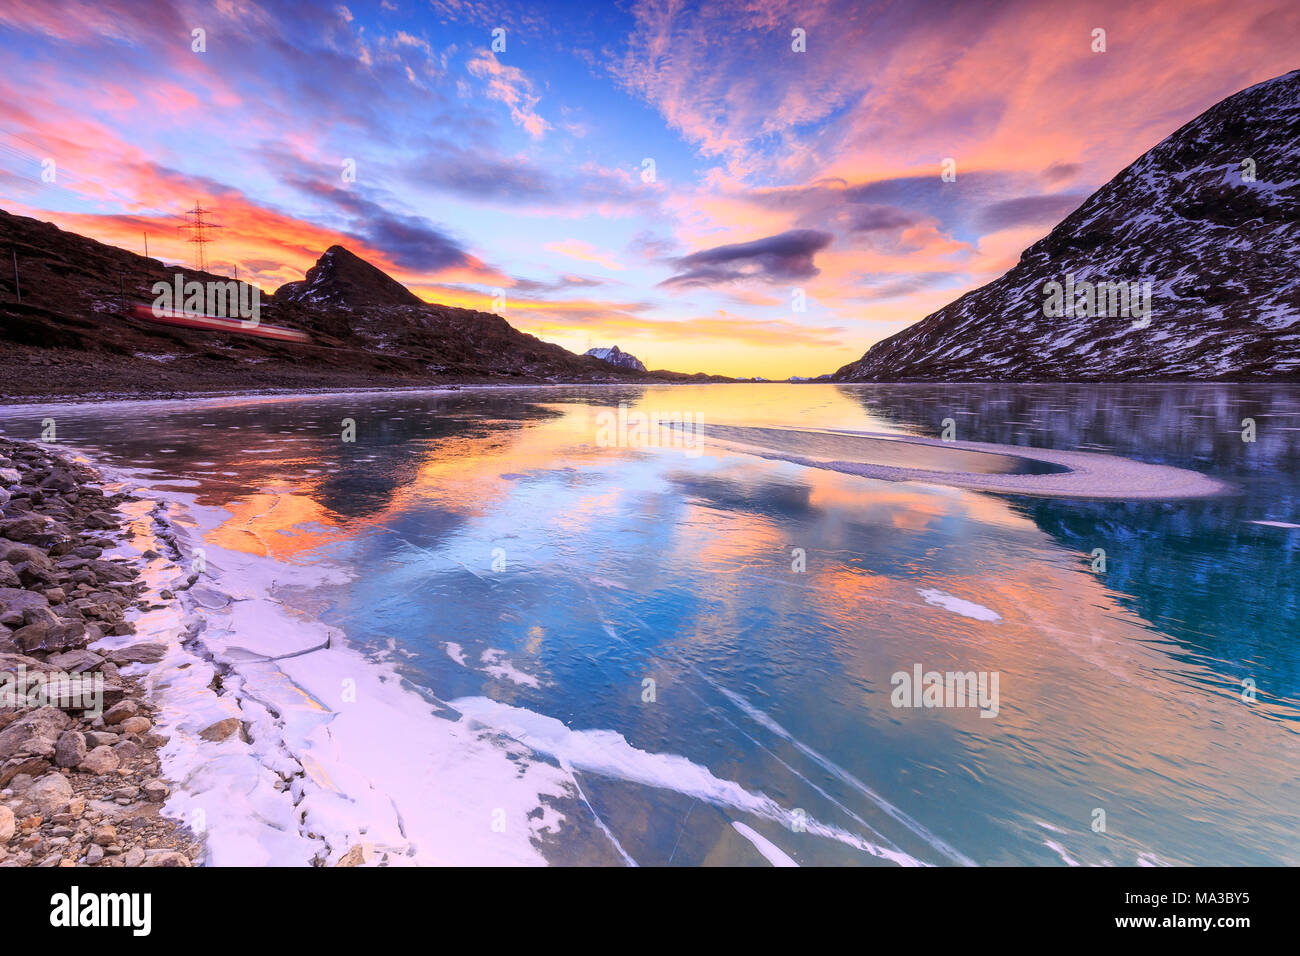 Atemberaubenden Sonnenaufgang auf dem gefrorenen Lago Bianco (Weißer See) mit Transit von Red Train., Bernina, Engadin, Graubünden, Schweiz. Stockfoto